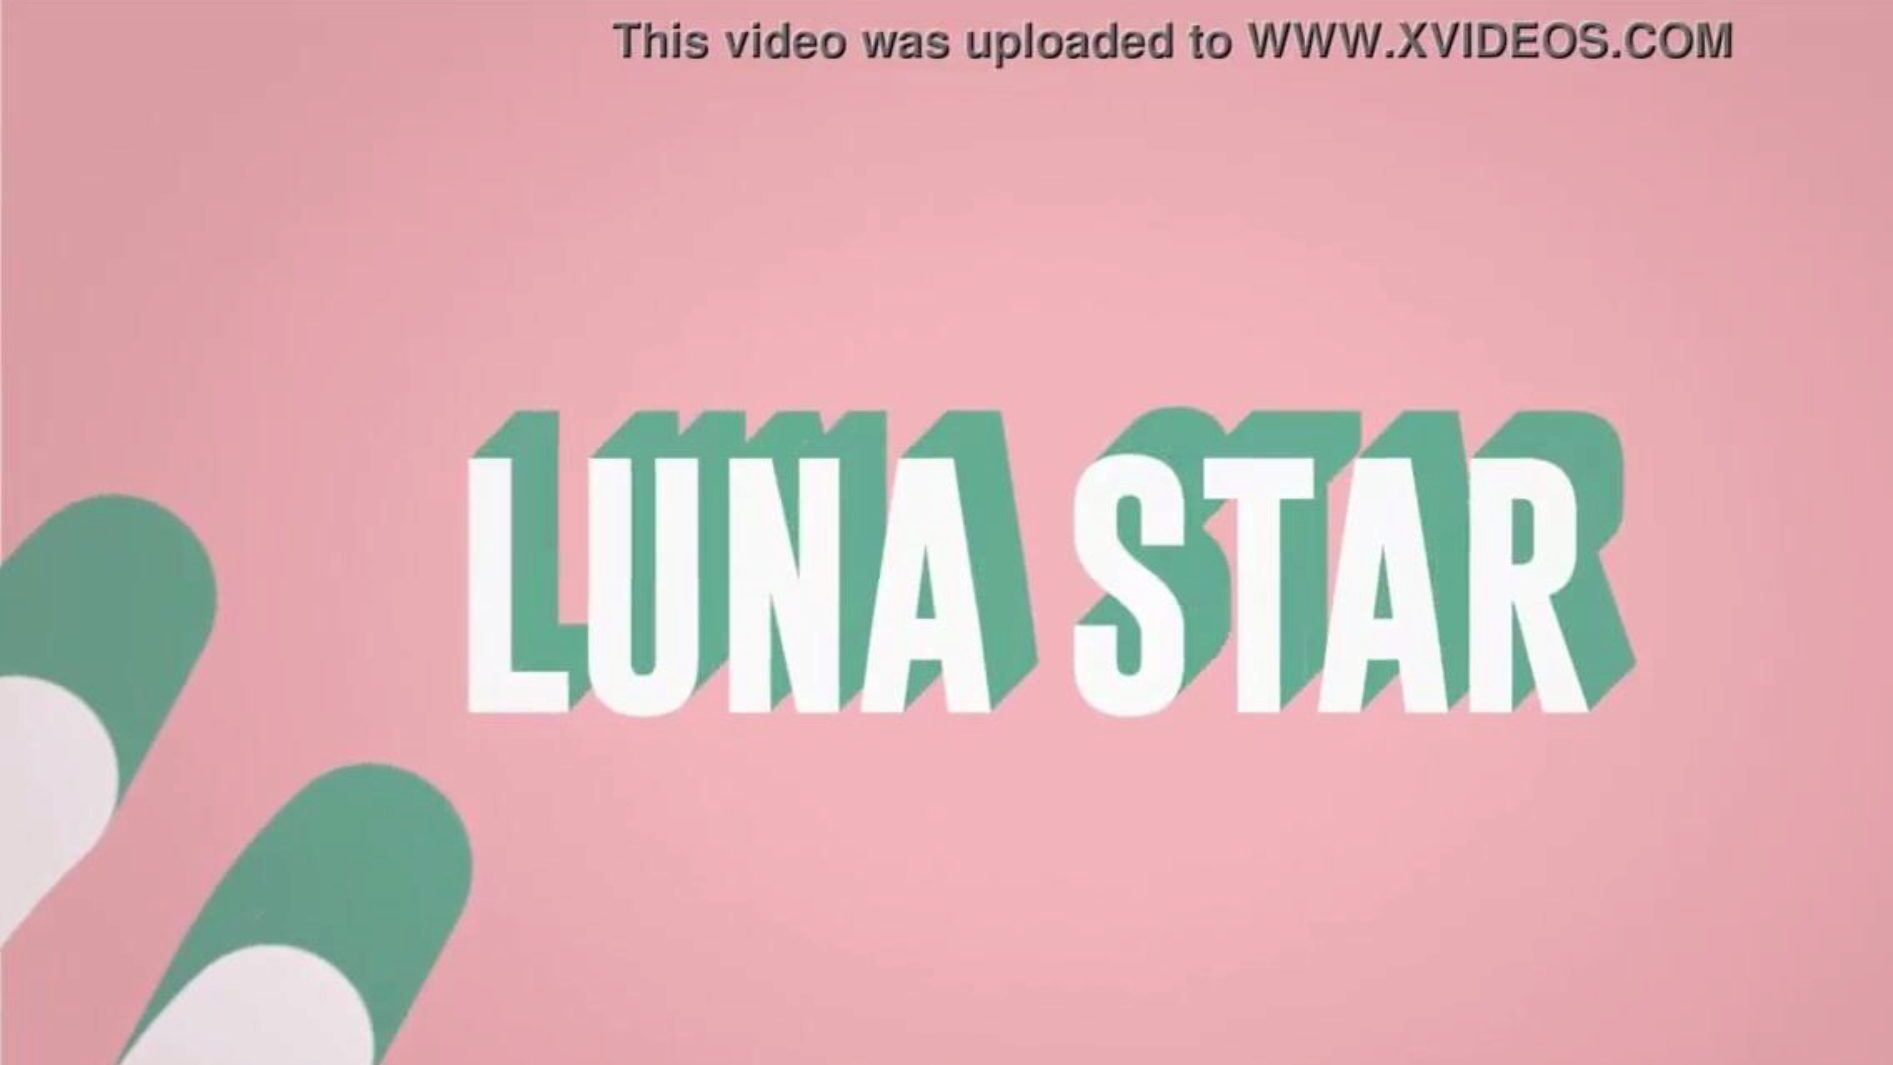 to moje pieprzone wifi: odcinek Brazzers z gwiazdą Luna; zobacz pełne na www.zzfull.com/luna